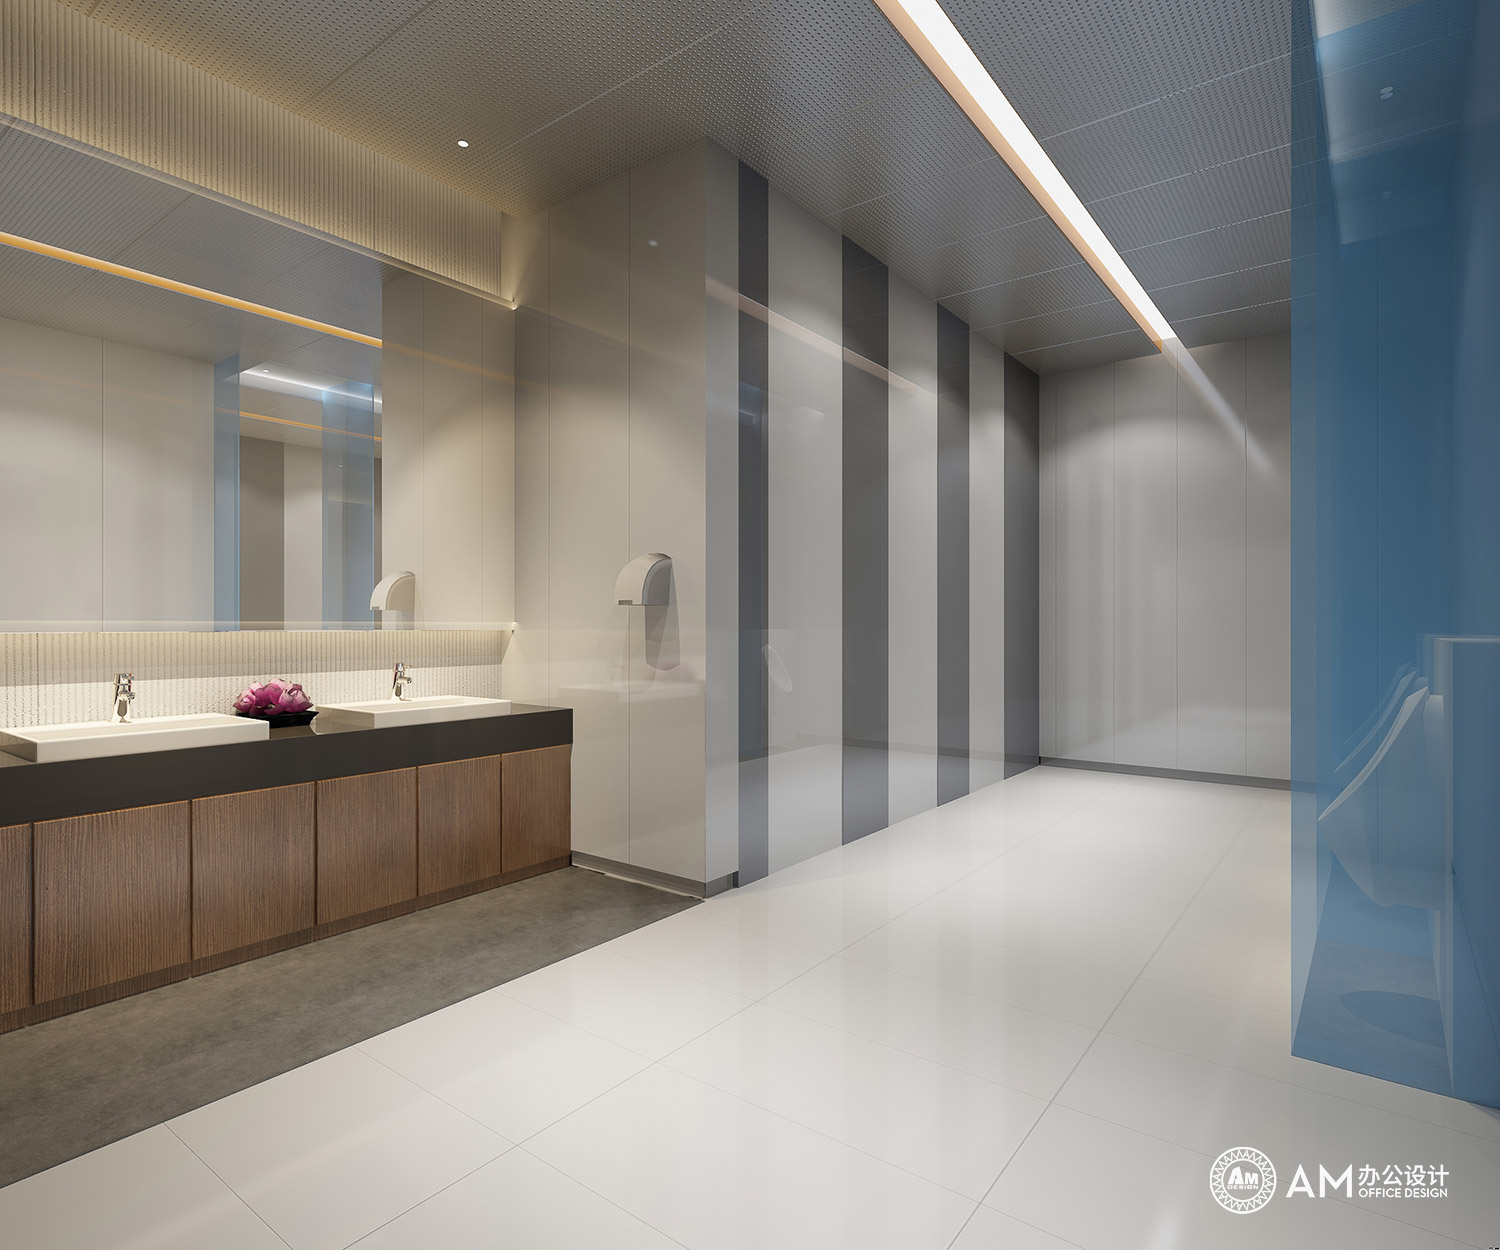 AM设计 | 新城热力办公楼卫生间设计